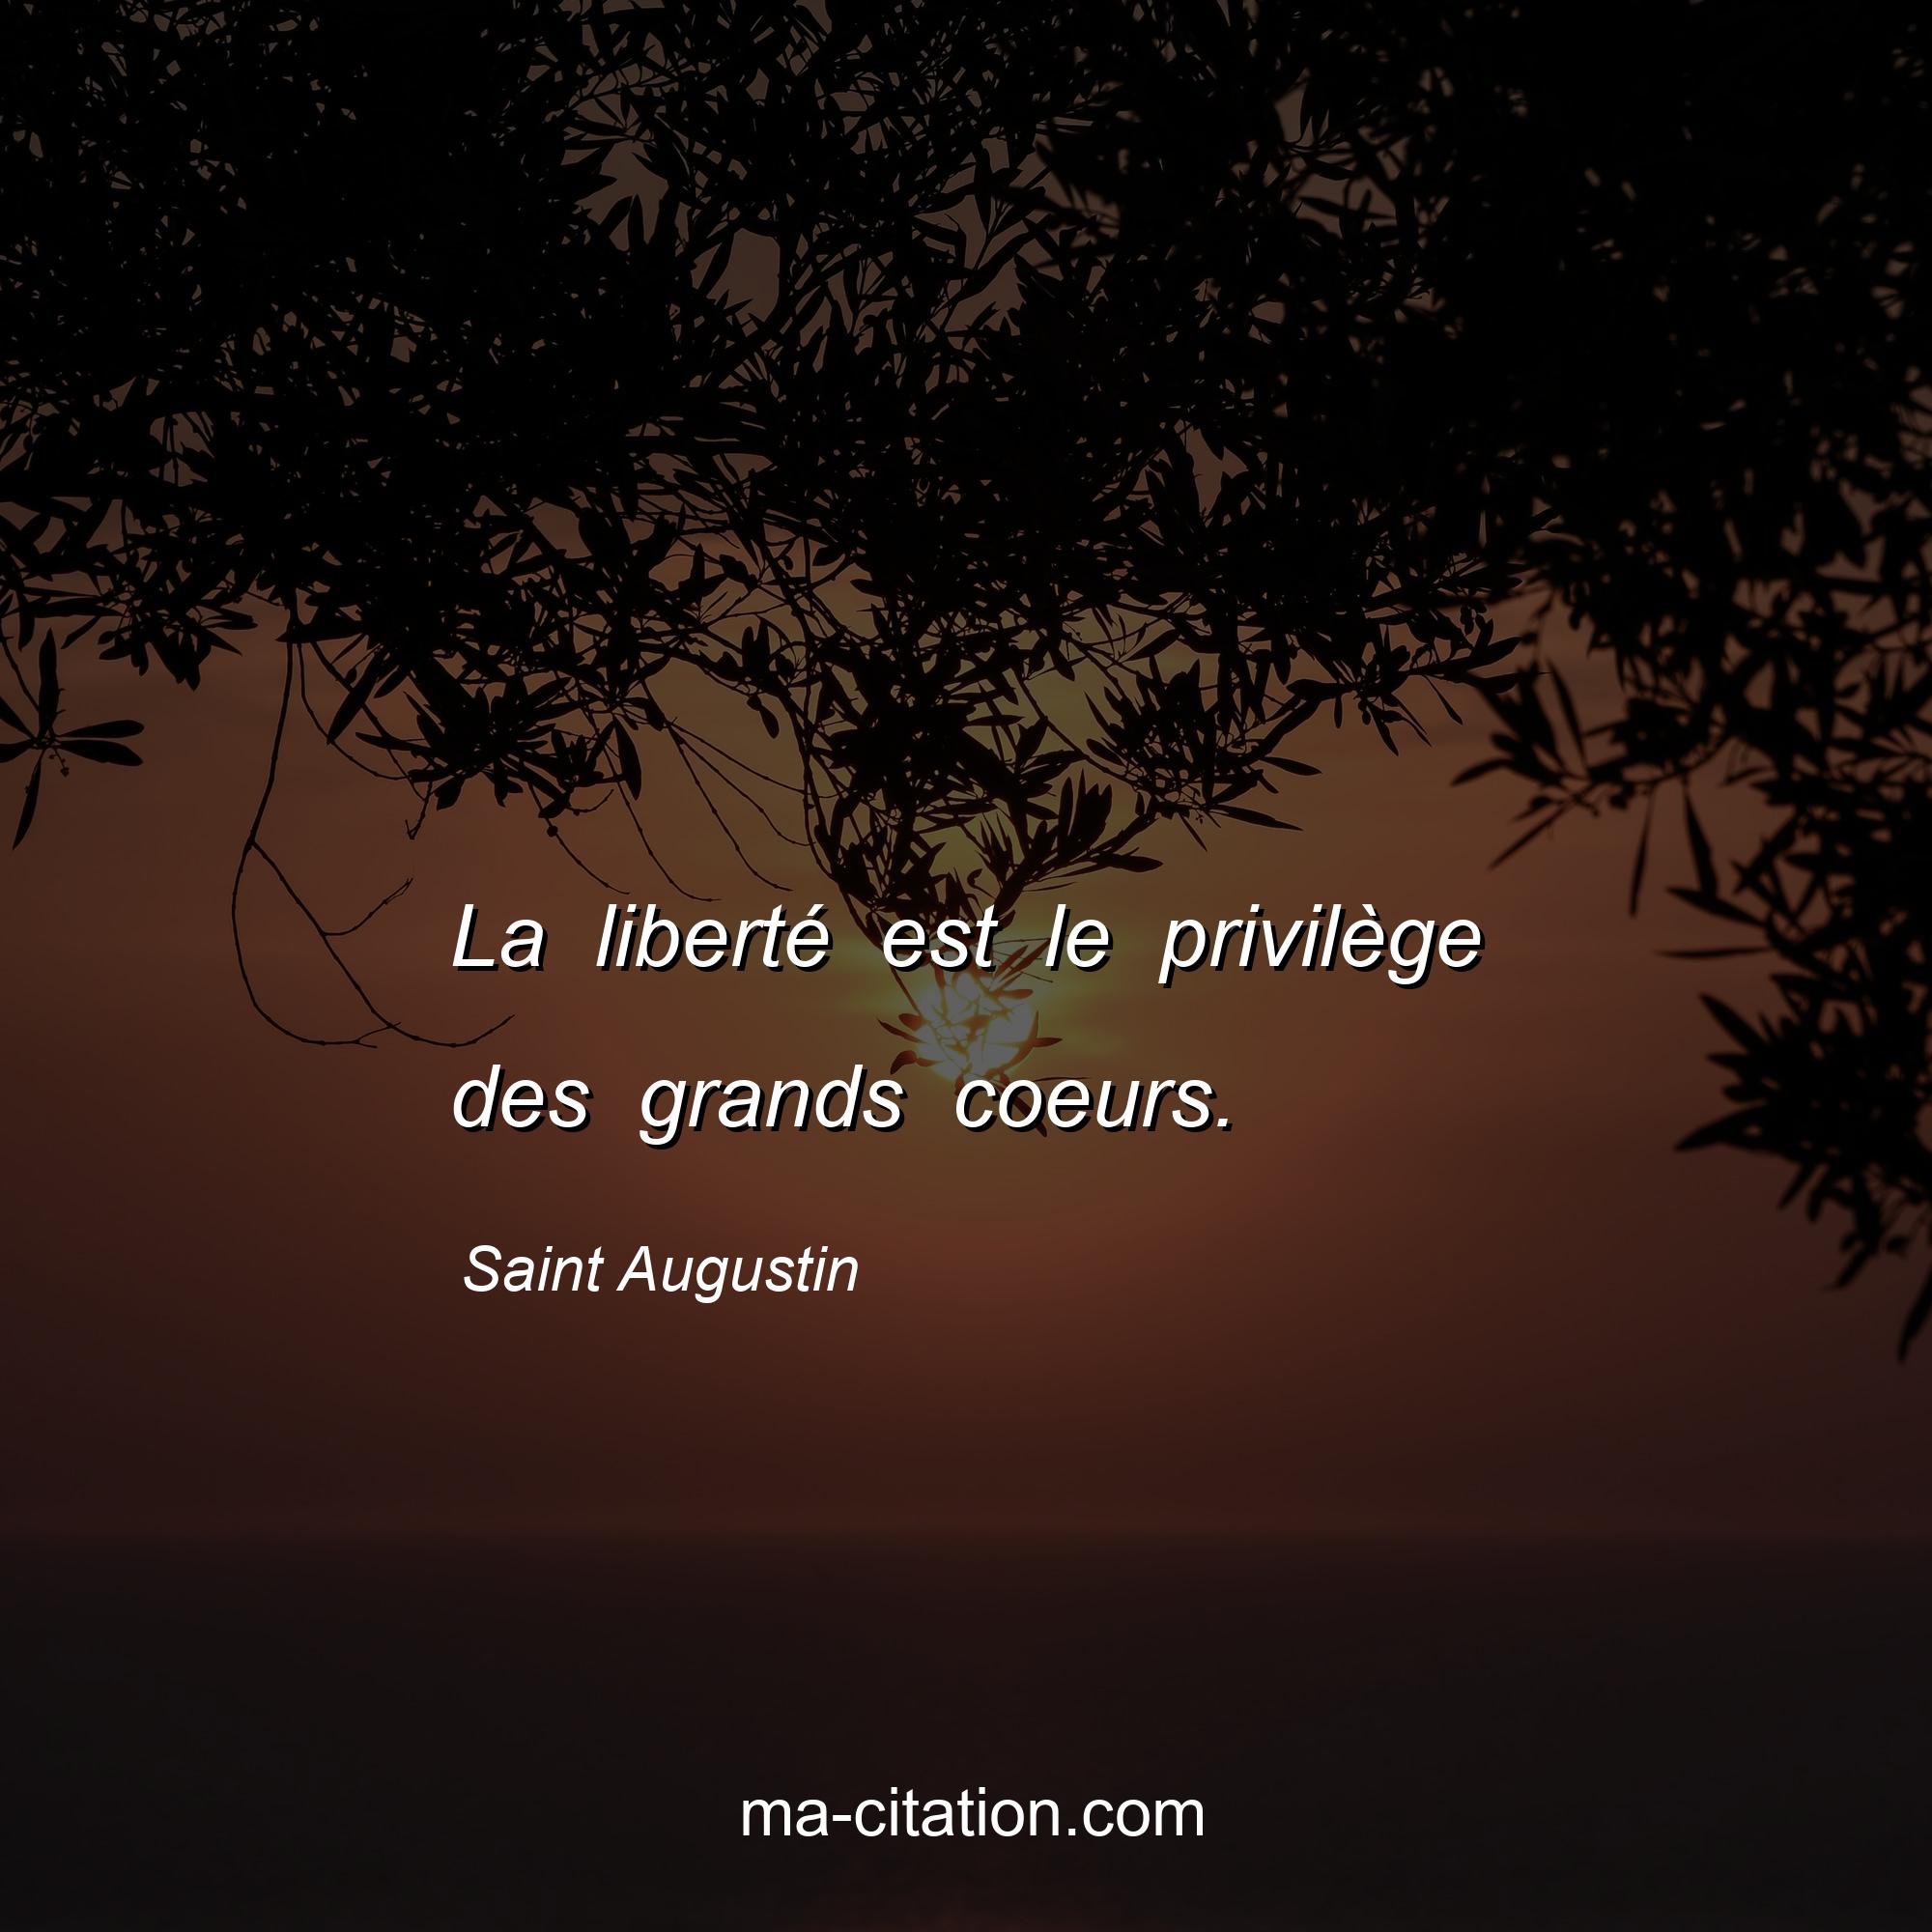 Saint Augustin : La liberté est le privilège des grands coeurs.